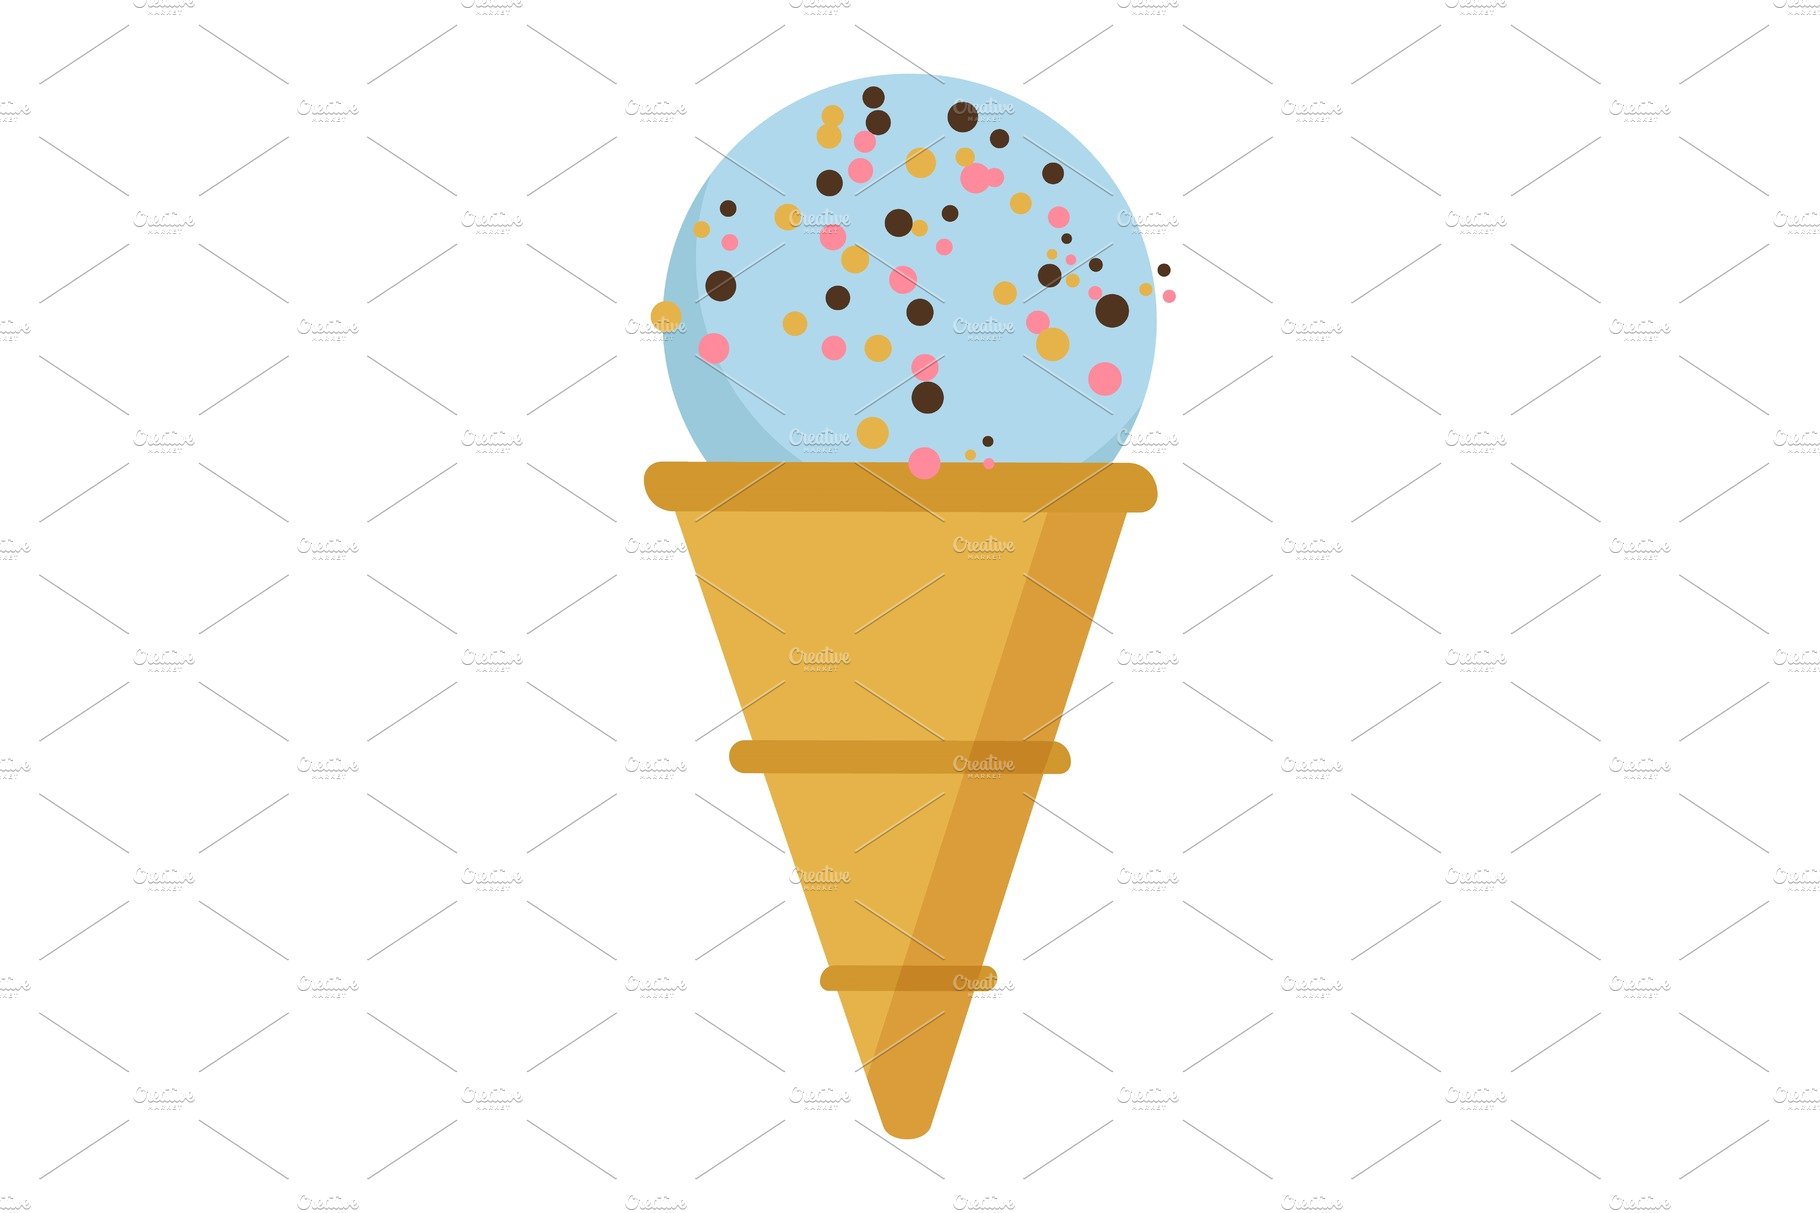 Ice Cream in Crusty Cone, Gelato cover image.